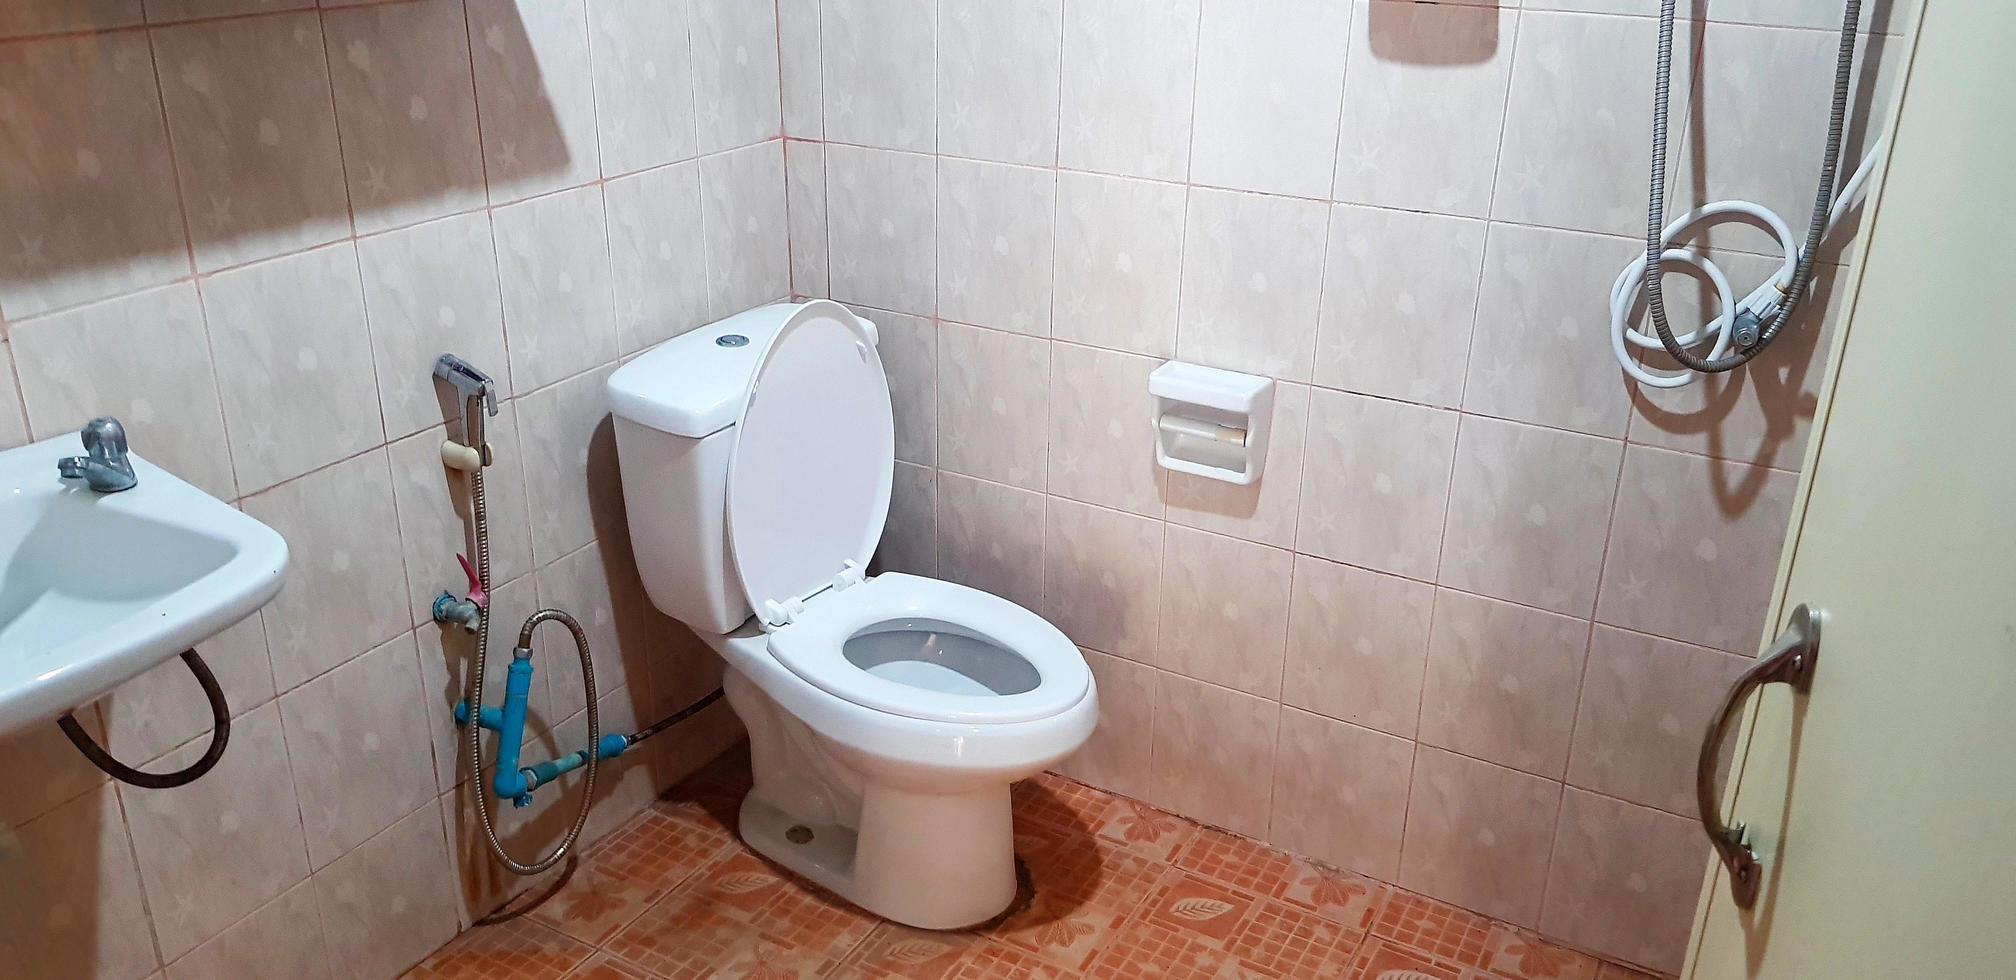 Badezimmer, Toilette, WC, Toilette oder Waschraum mit weißem Waschbecken, Waschbecken, Waschbrett, Spültoilette. Innenraum und Objektgruppe. foto